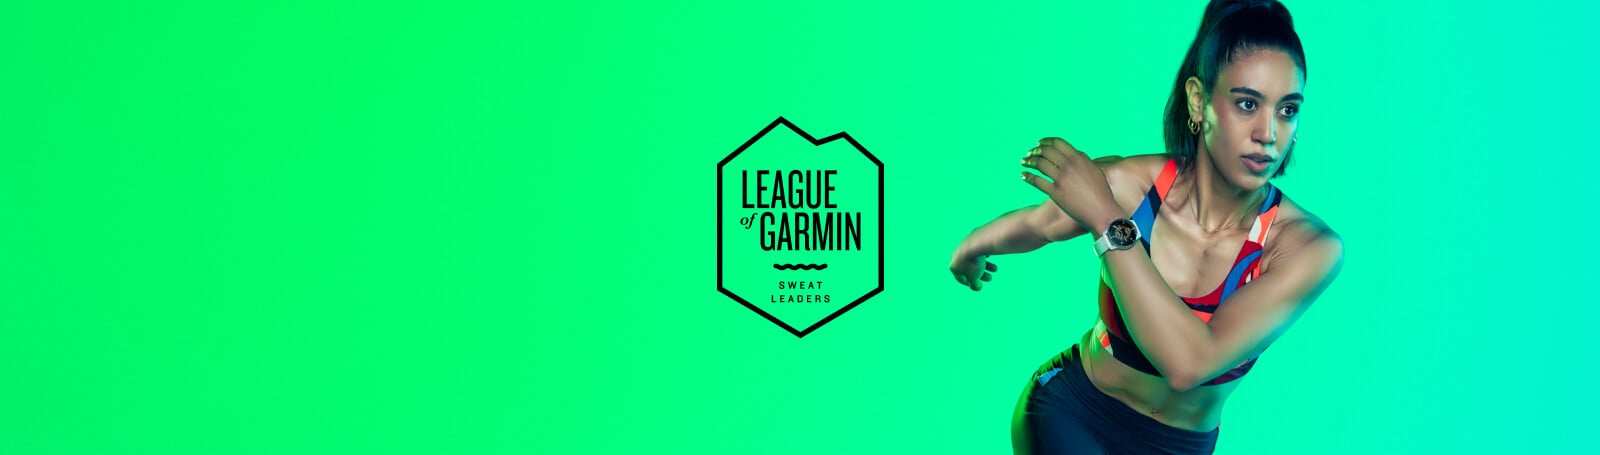 League of Garmin Sweat Leaders | Garmin